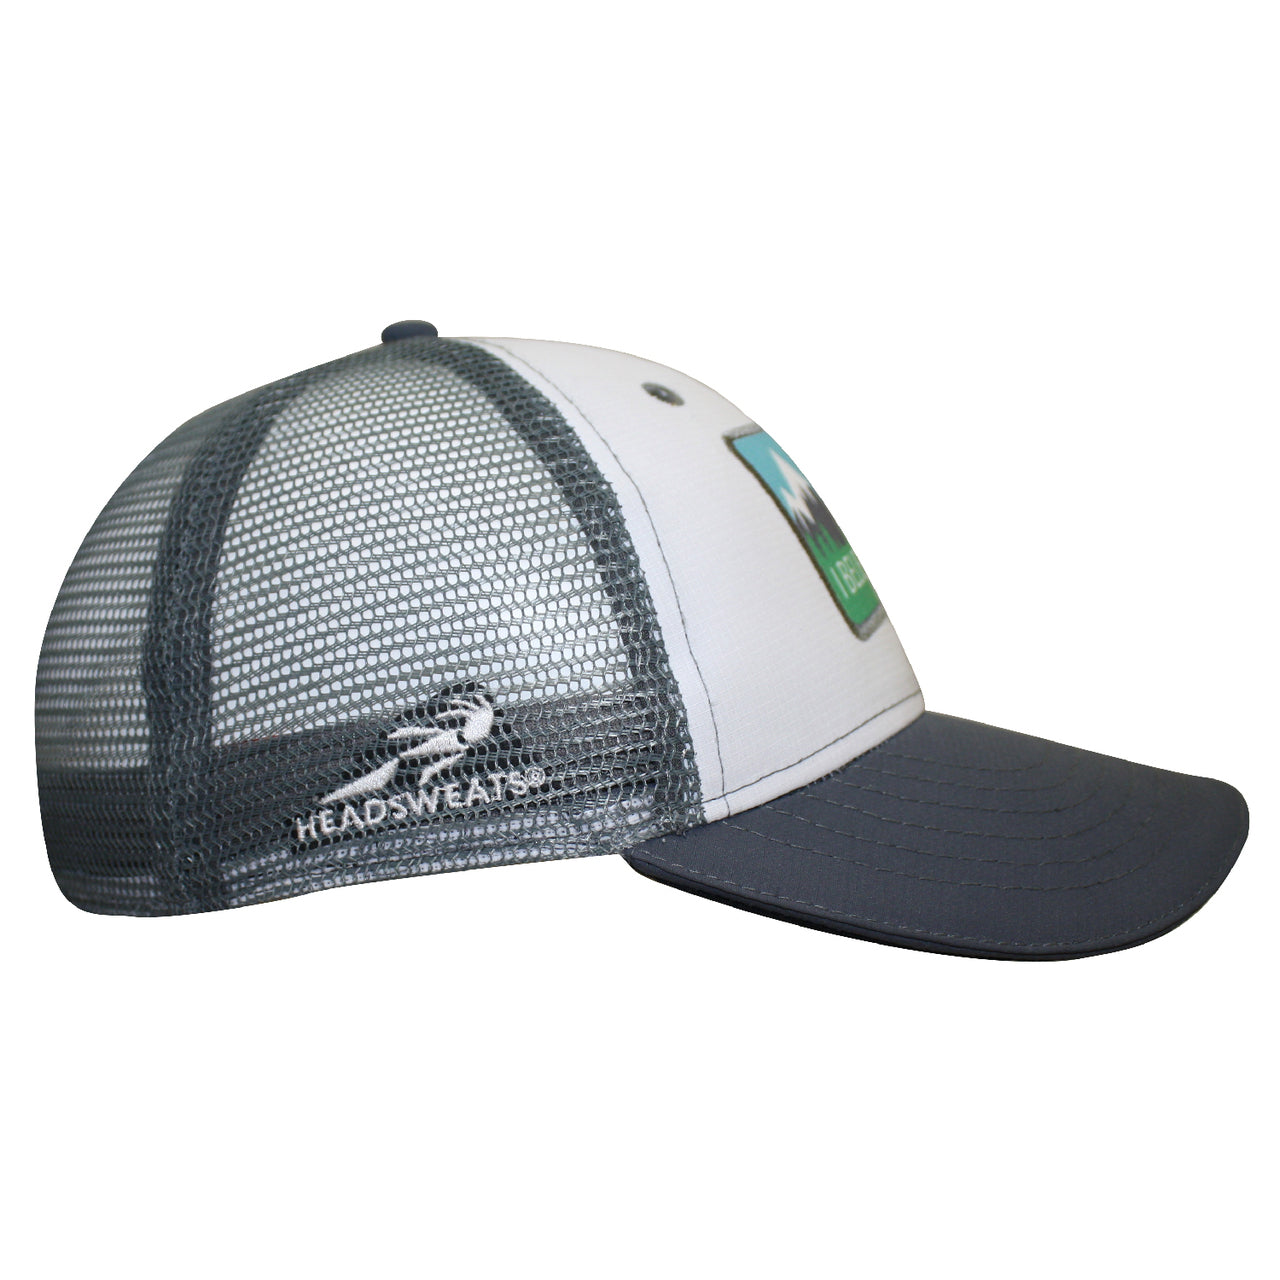 Headsweats Trucker Hat - Gray